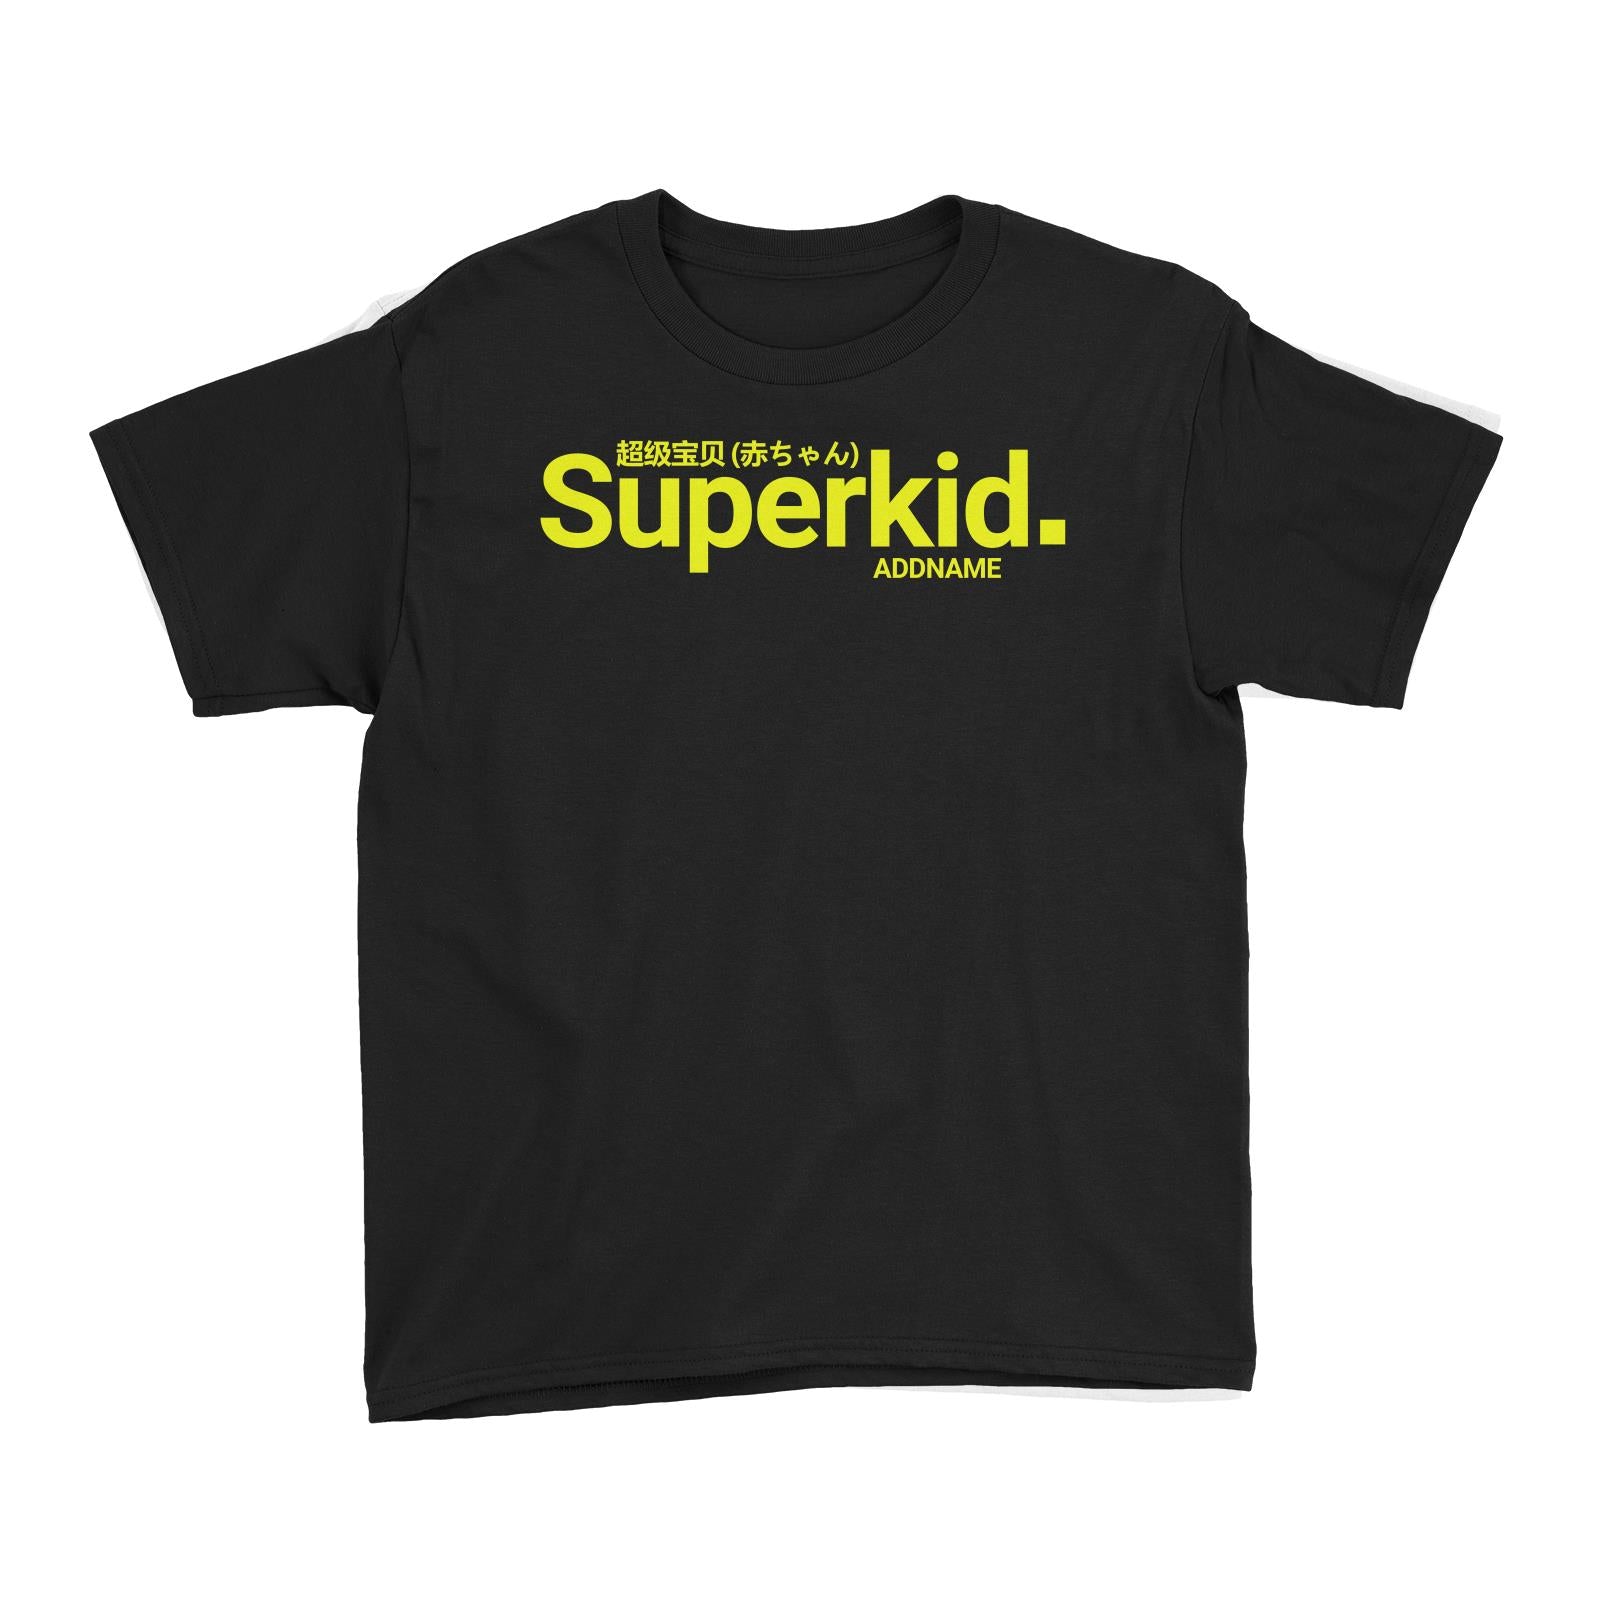 Streetwear Superkid Addname Kid's T-Shirt